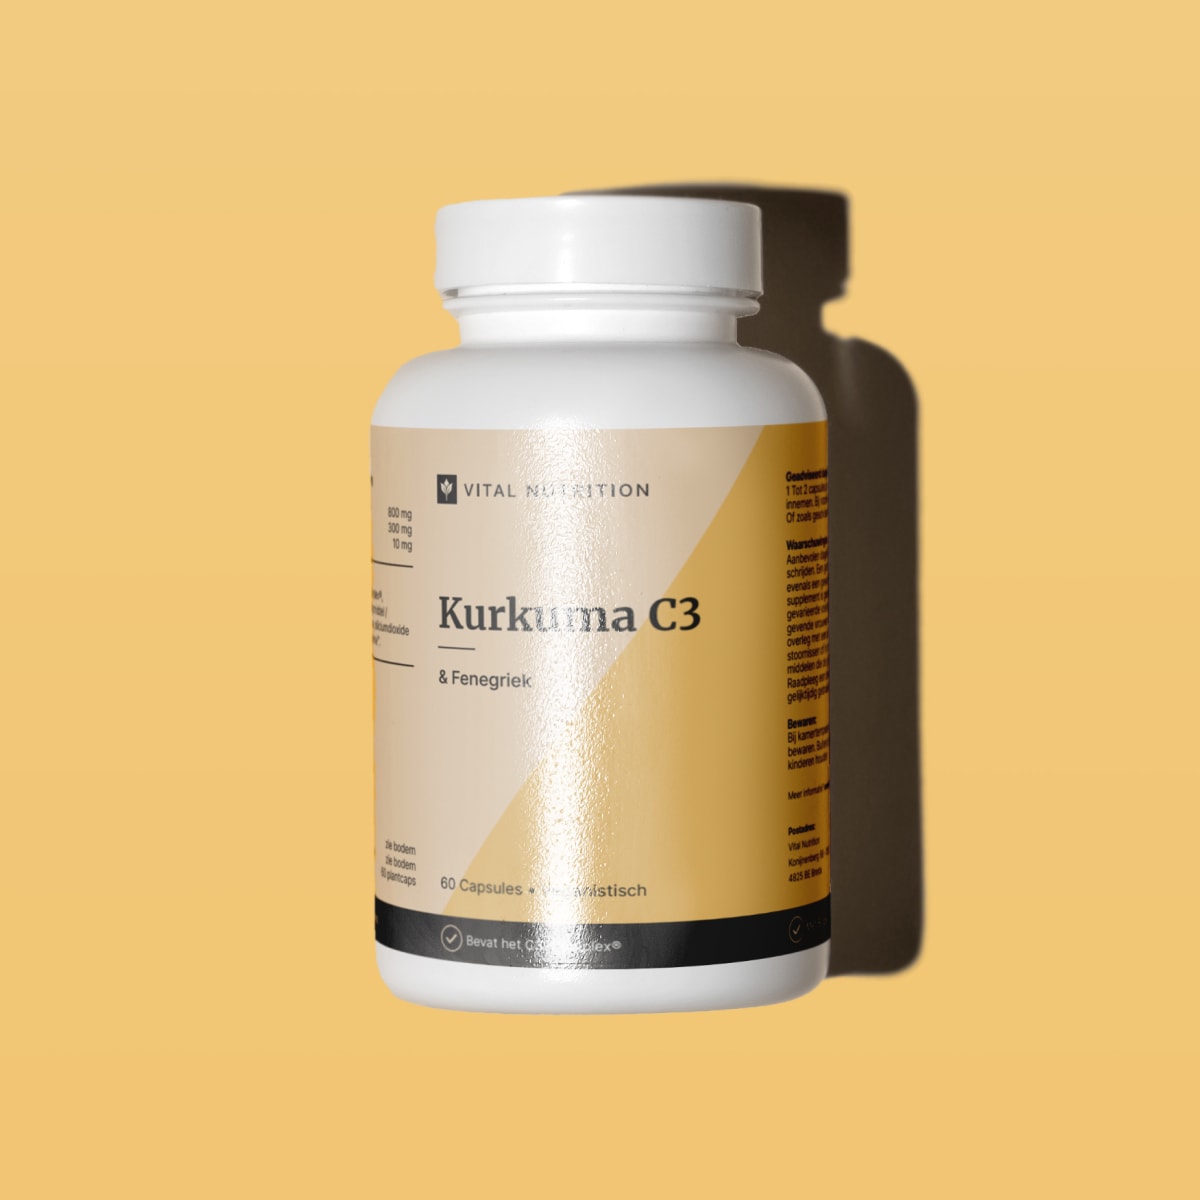 Kurkuma C3 & Fenegriek van Vital Nutrition